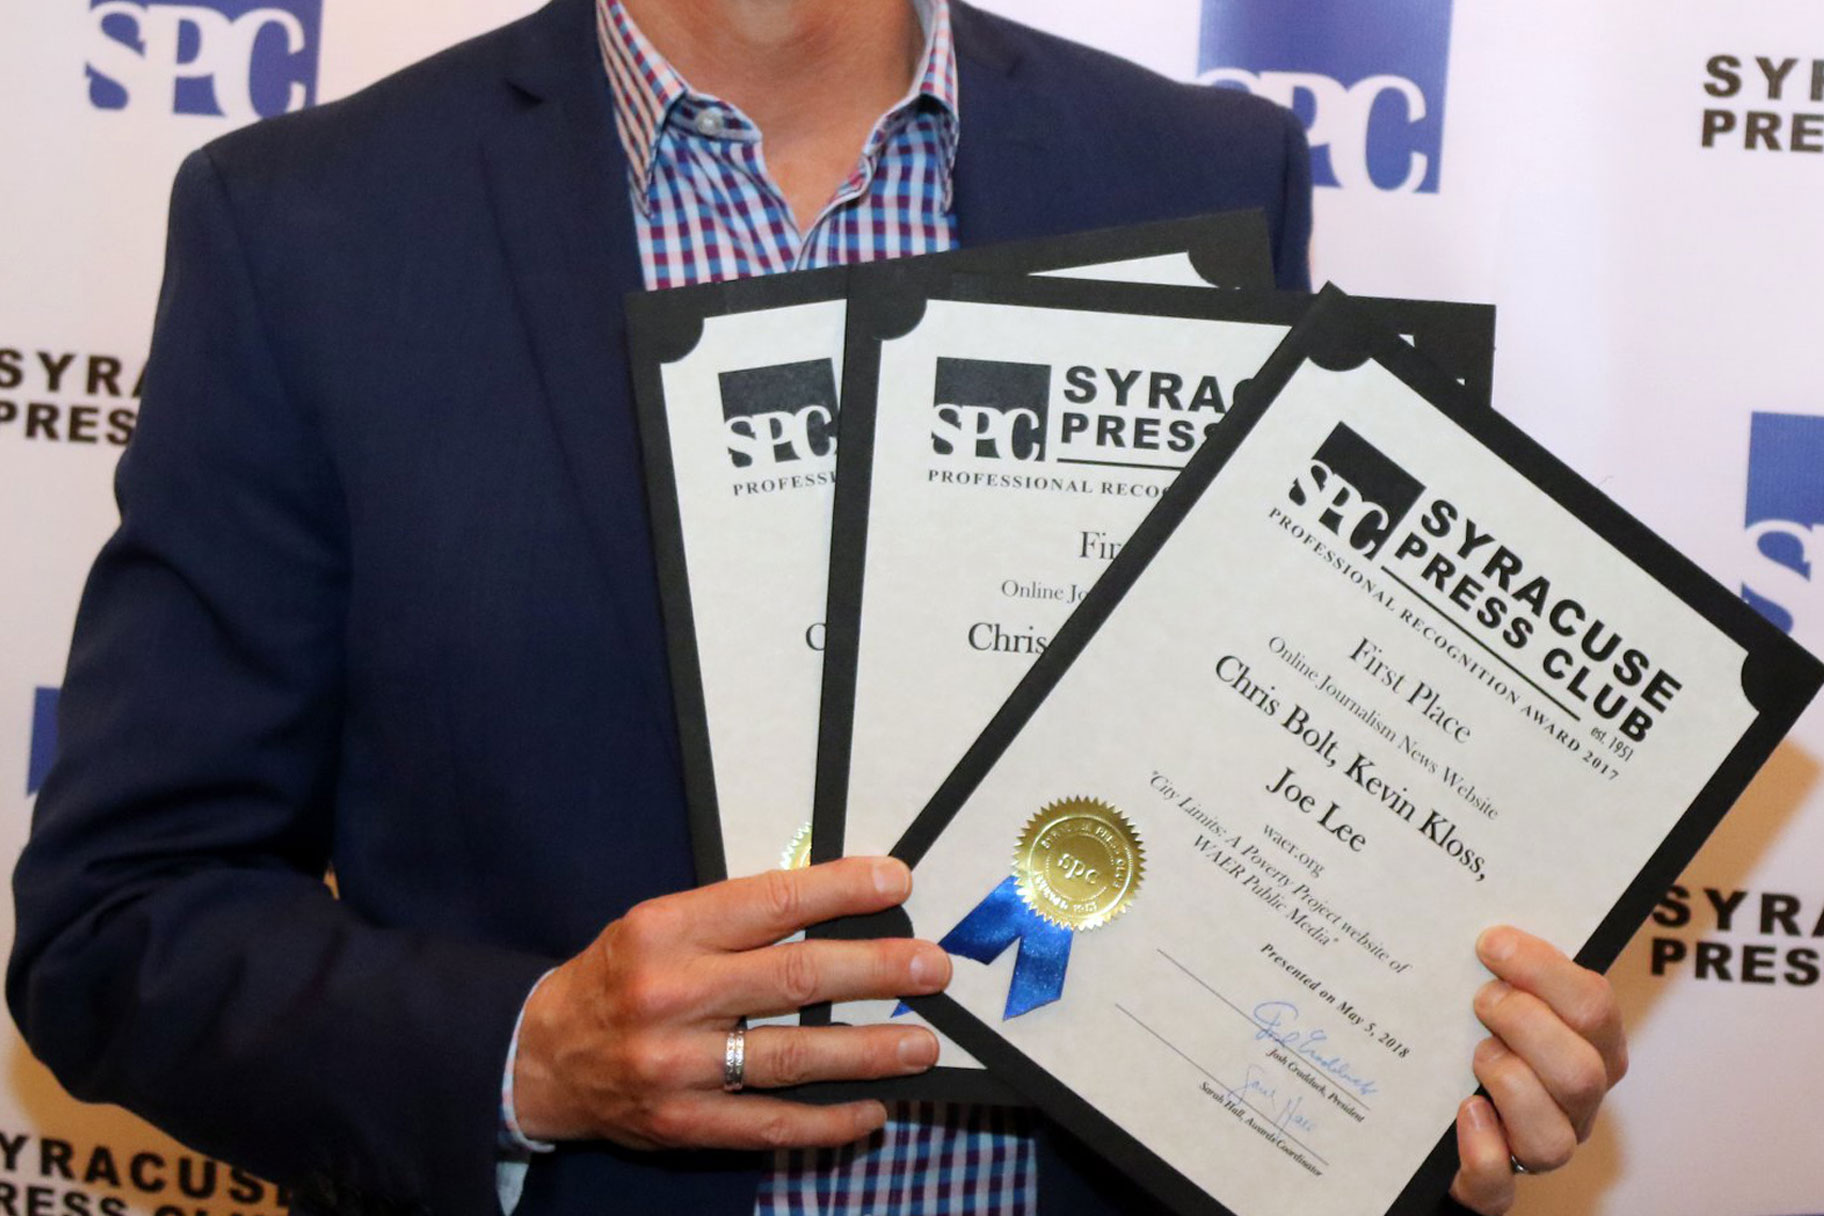 Award winner holding certificates